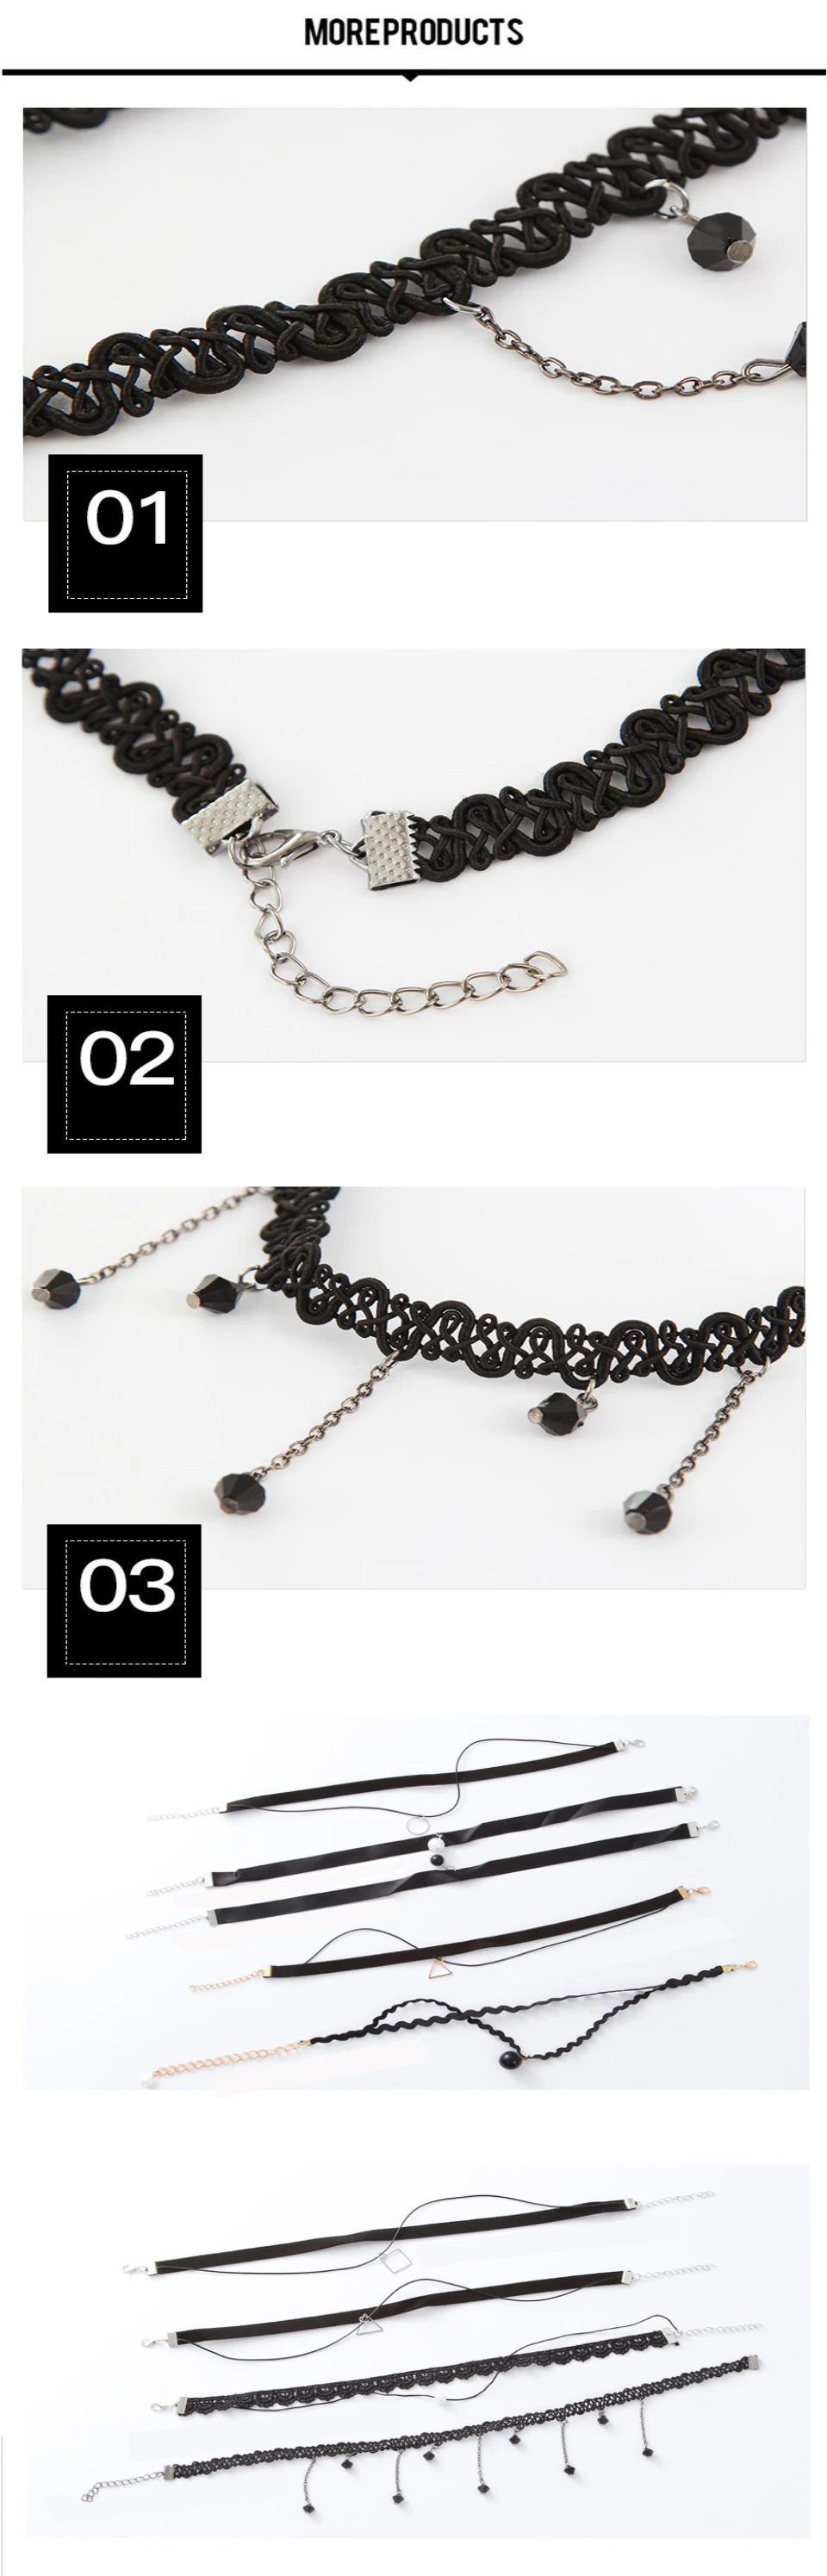 JXXGS Новое поступление модное ожерелье-чокер Винтаж/кружево/черное кожаное ожерелье в стиле «панк» Слои бархатный, покрывающий область ключицы галстук-бабочка, Цепочки и ожерелья